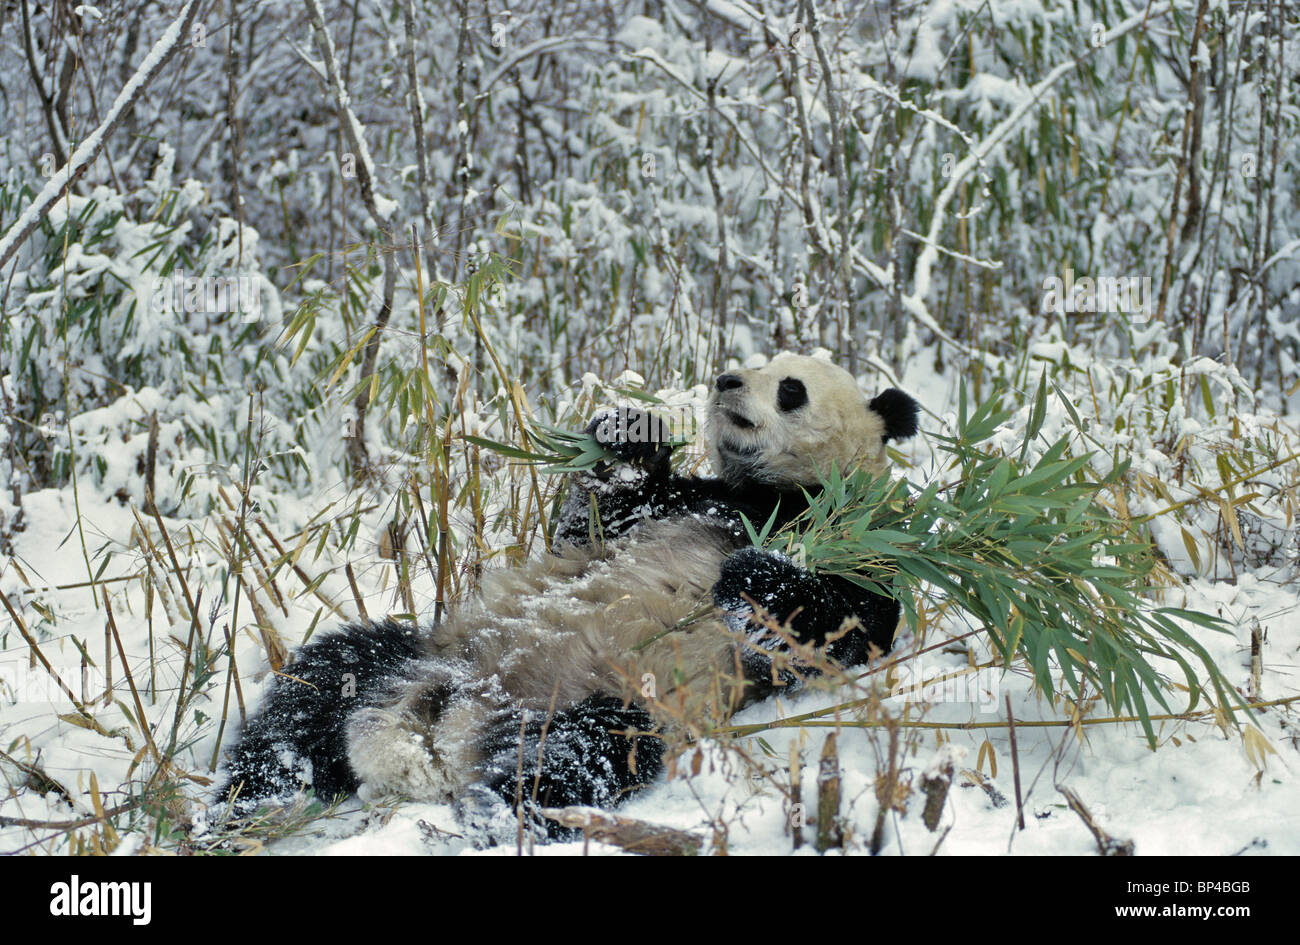 Panda gigante alimentándose de bambú en nieve, Wolong, China, Febrero Foto de stock